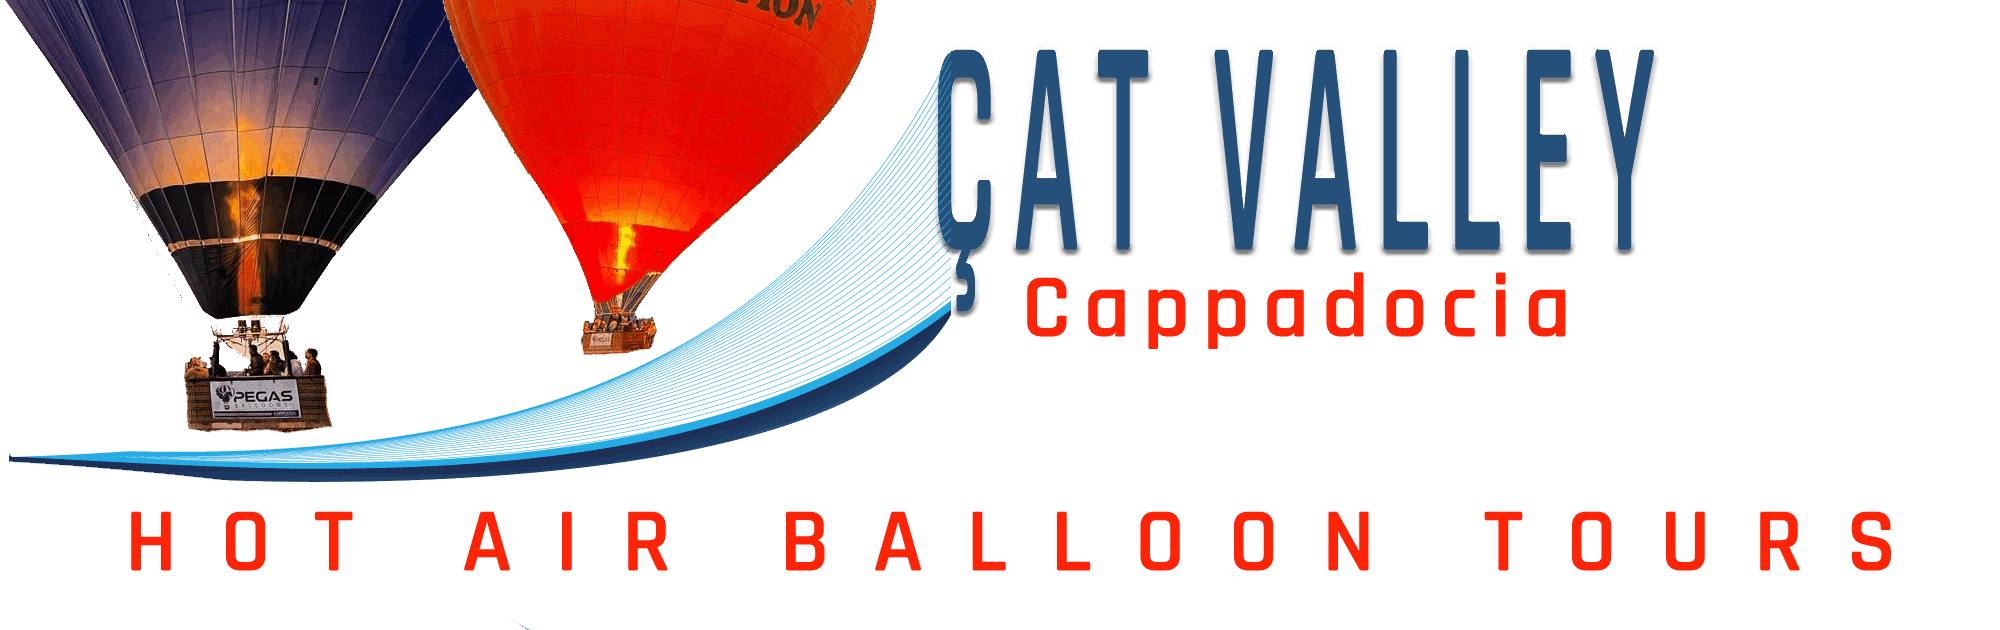 Cat Valley Hot Air Balloon Tours - Cappadocia